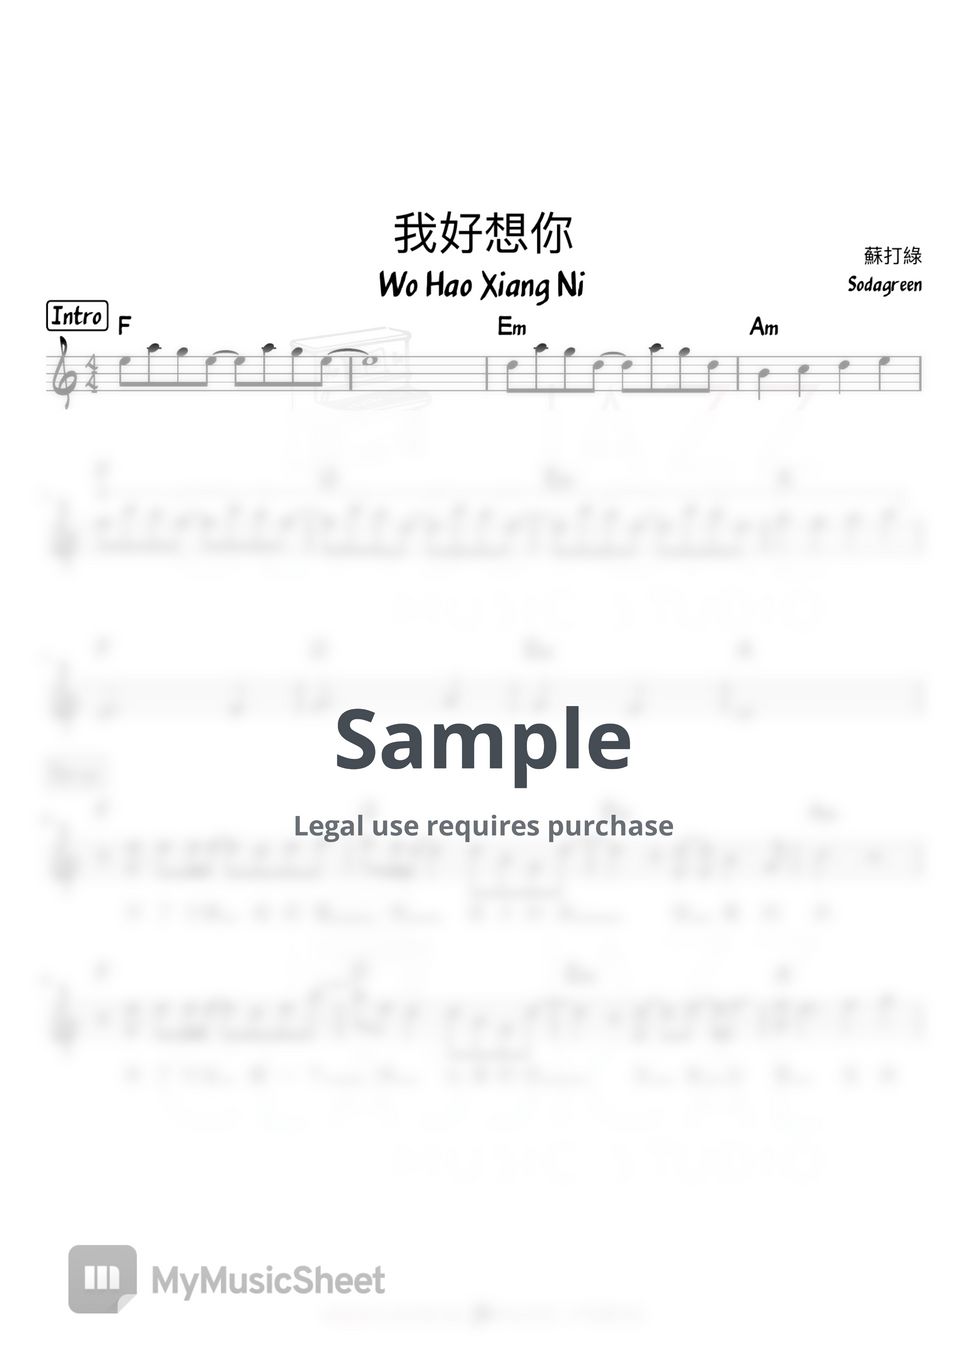 Sodagreen - 我好想你 (Wo Hao Xiang Ni) by Jazz Classical Music Studio